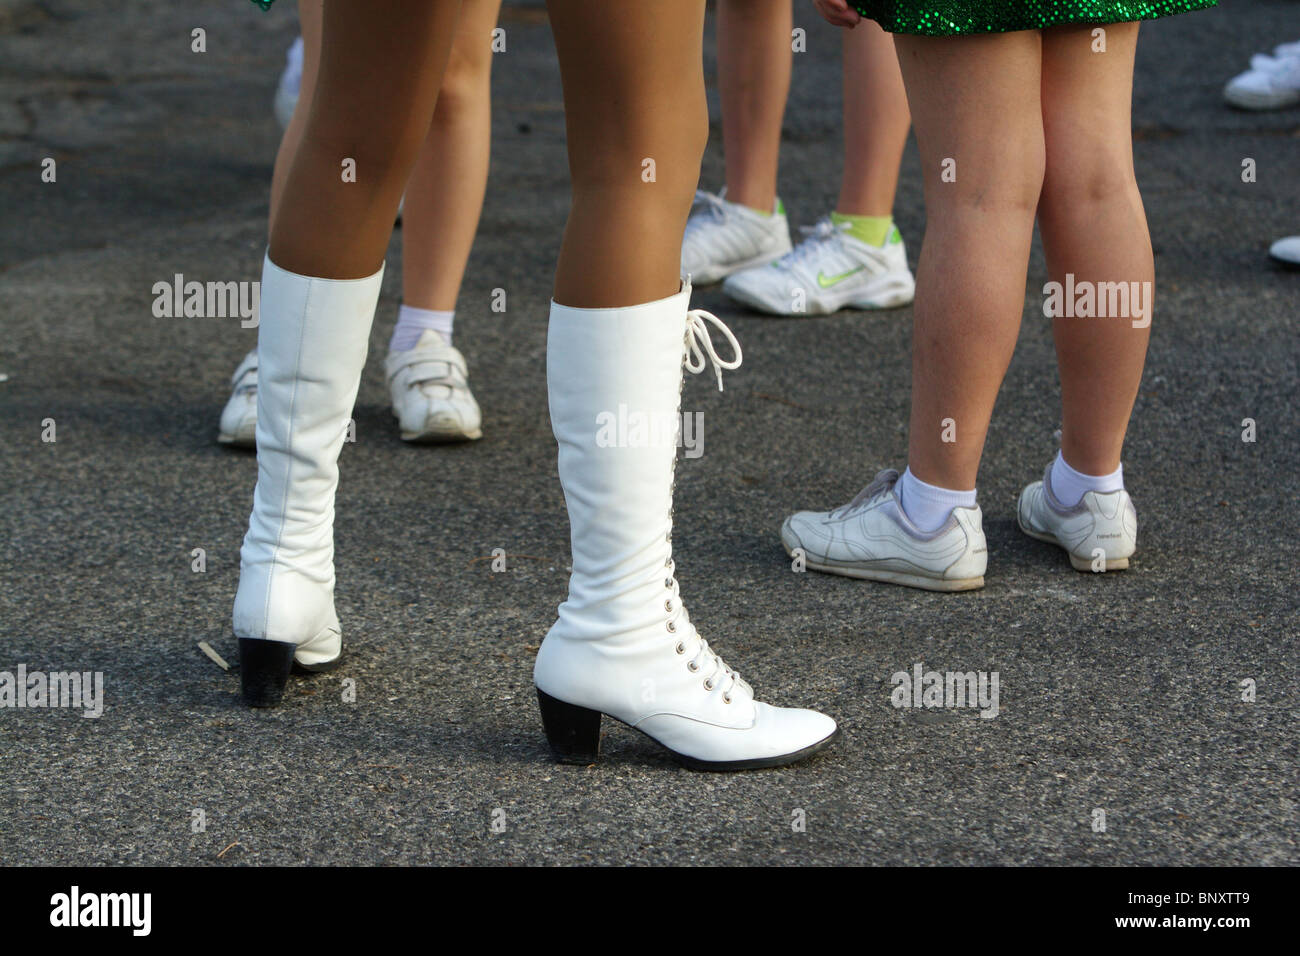 Des bottes blanches majorette femme debout sur les jambes Photo Stock -  Alamy